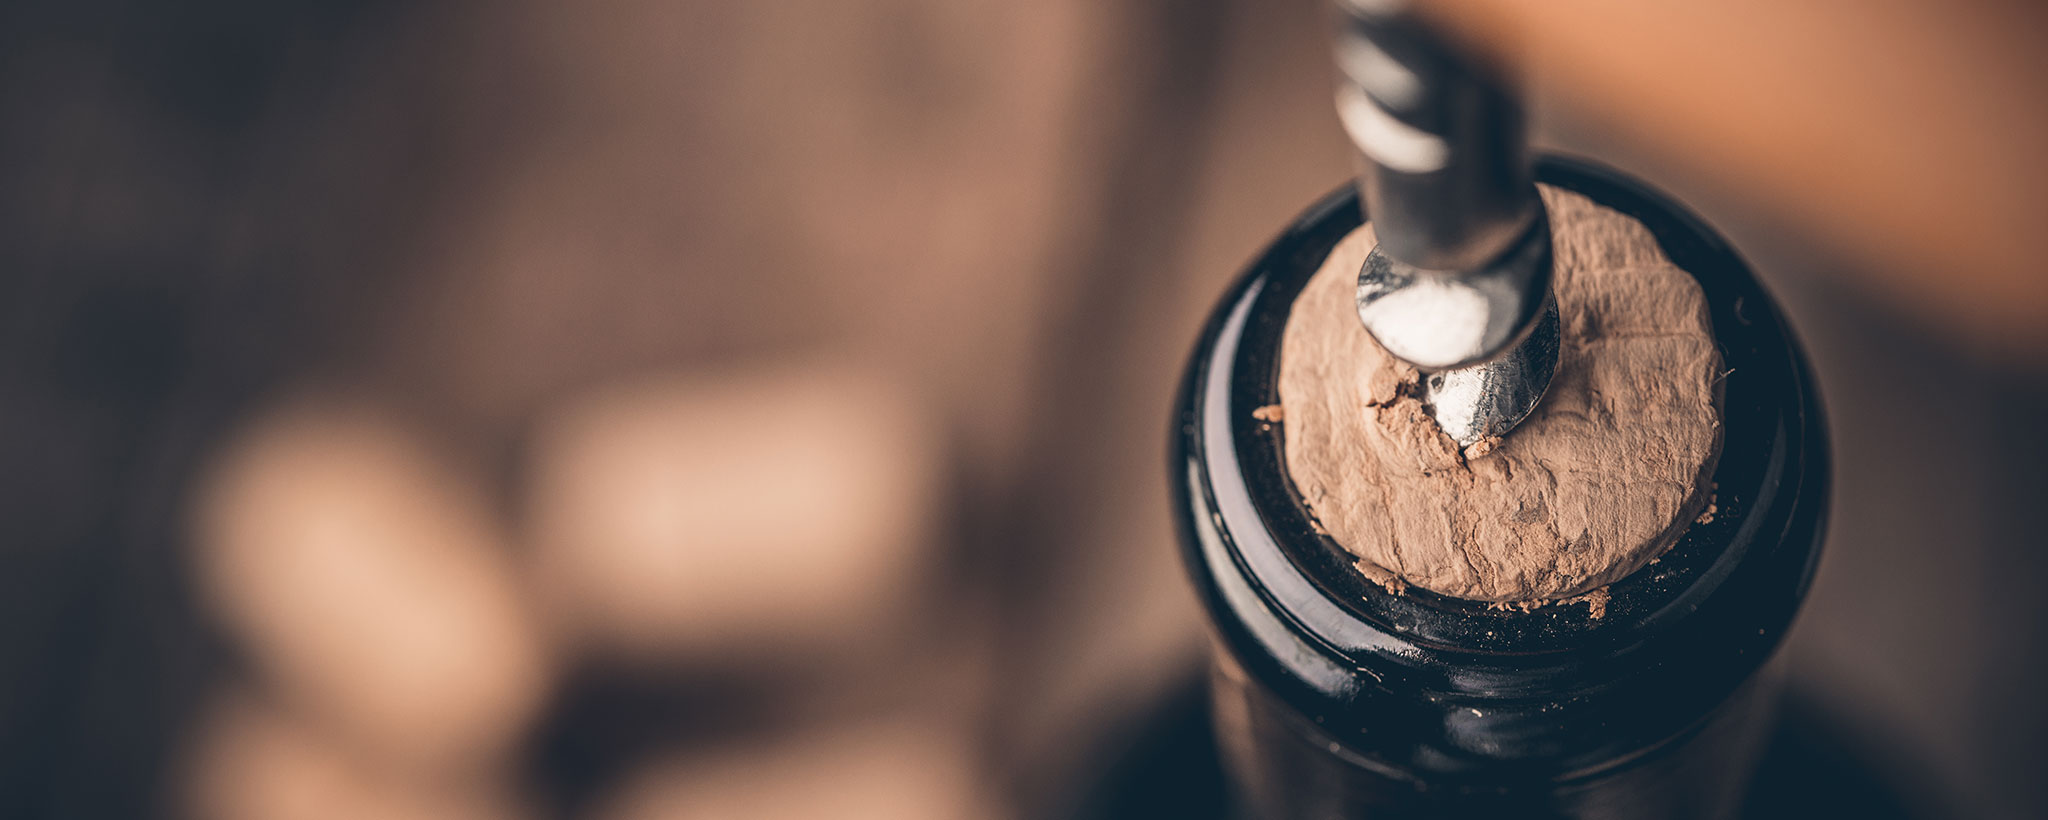 corkscrew opening bottle of wine